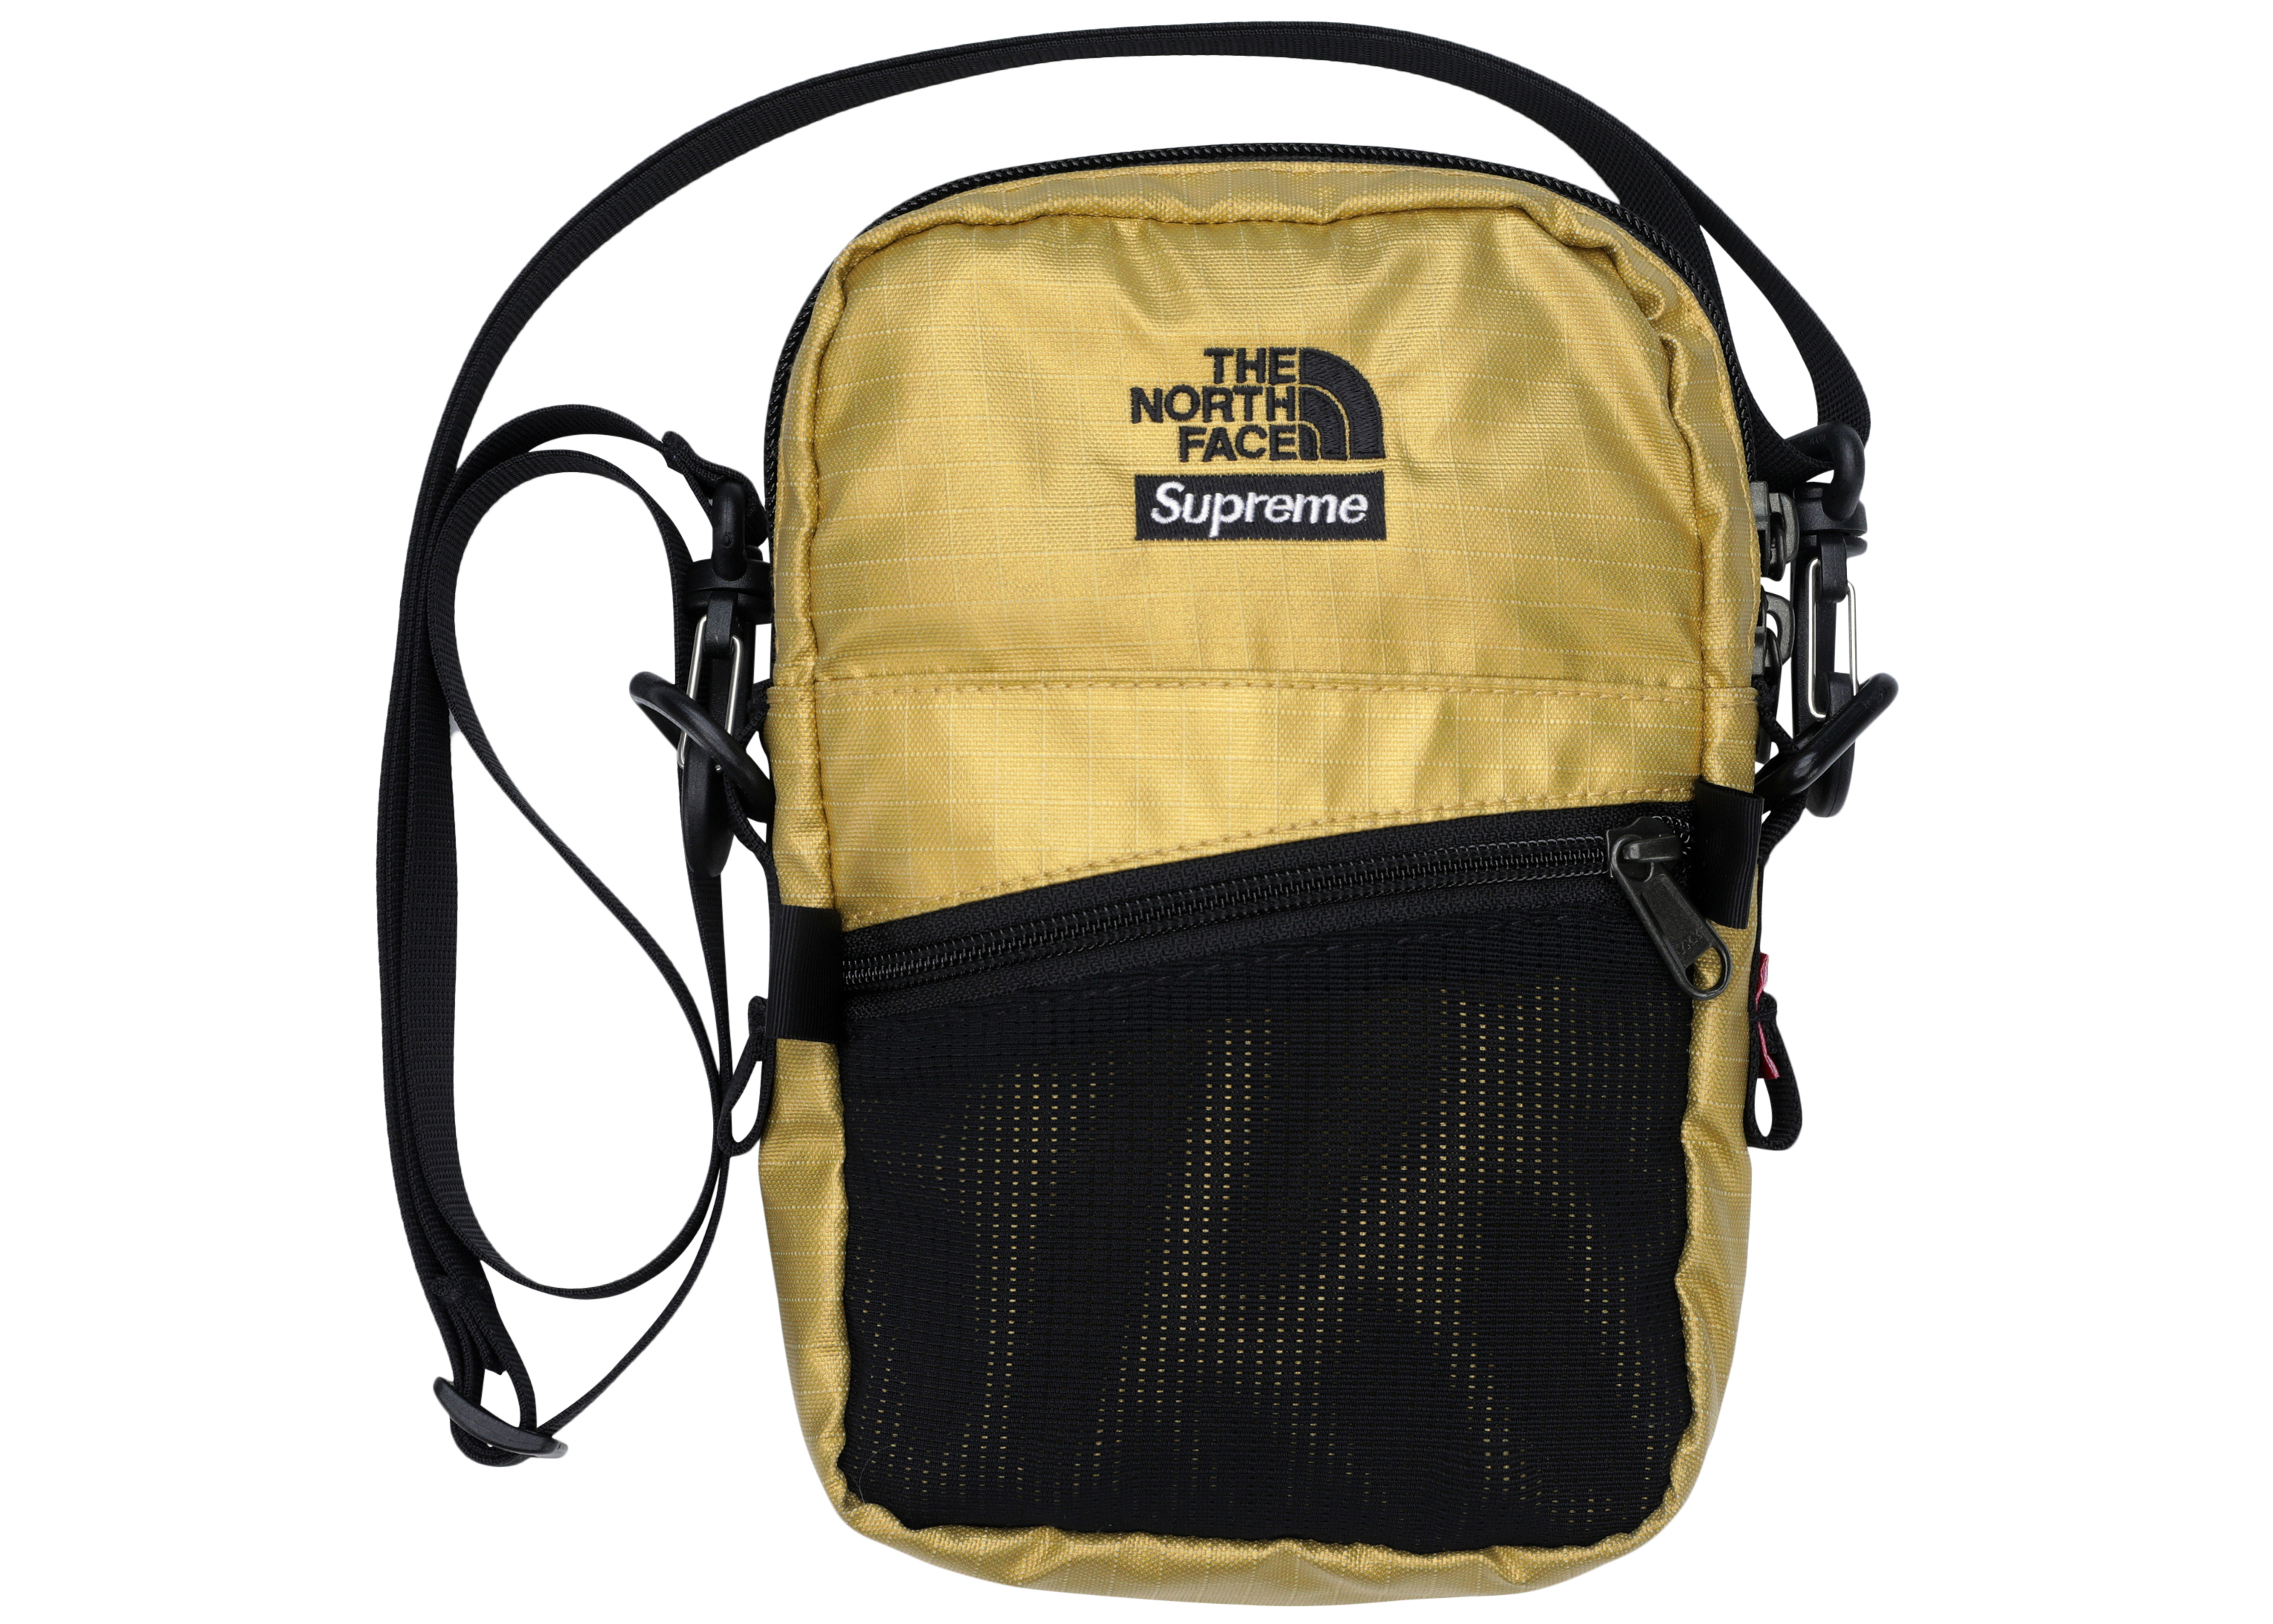 the north face supreme shoulder bag